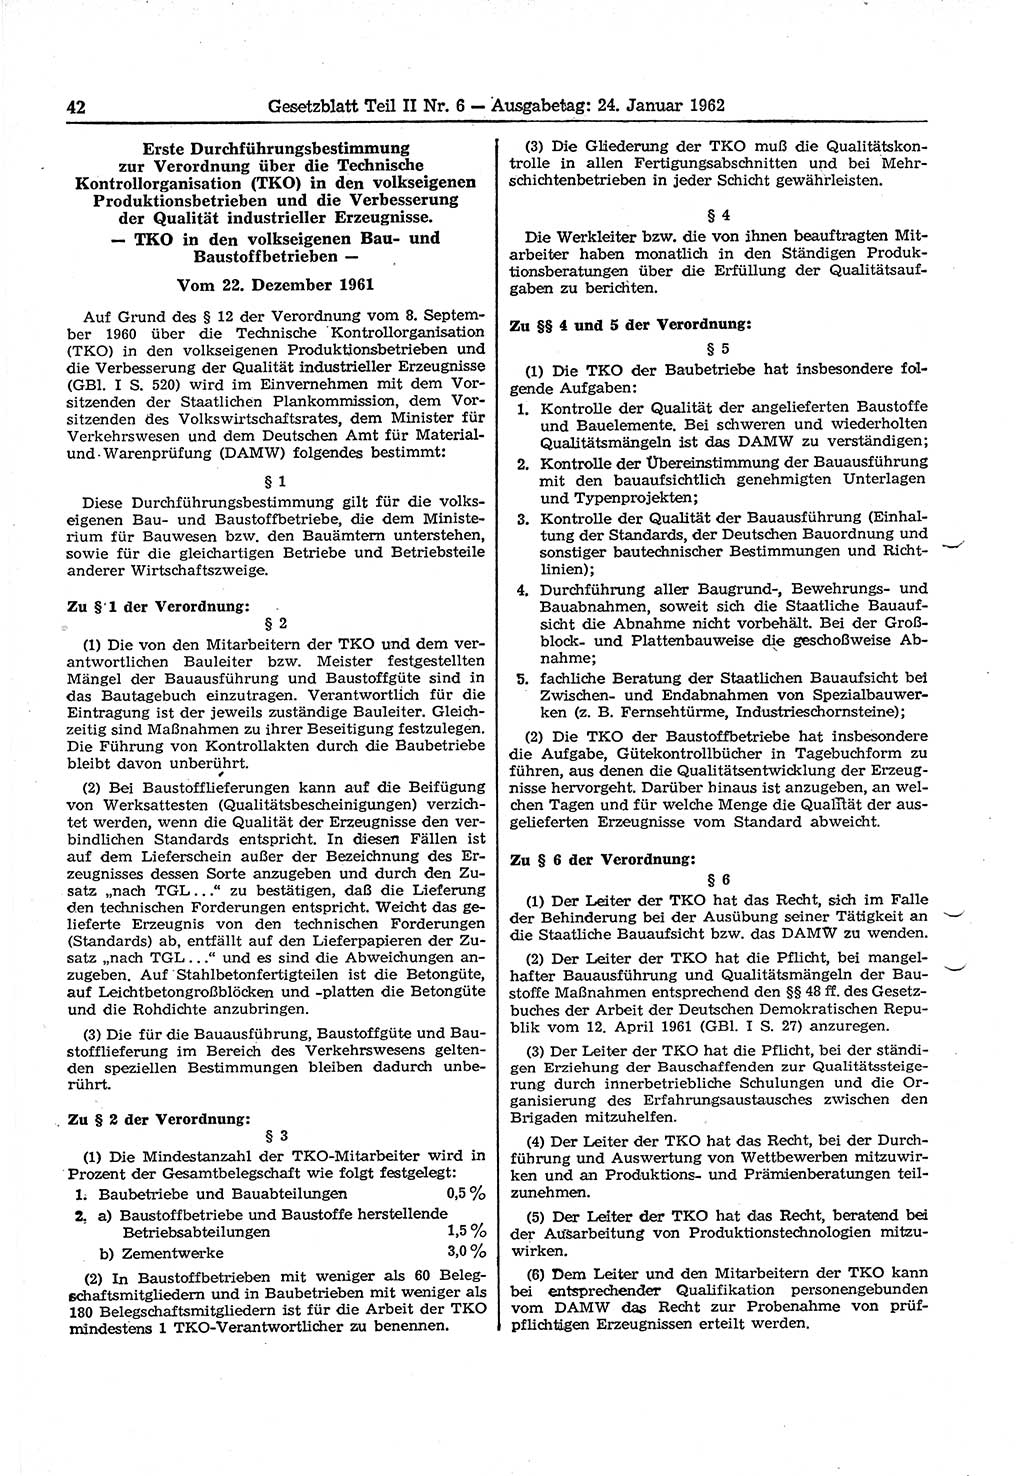 Gesetzblatt (GBl.) der Deutschen Demokratischen Republik (DDR) Teil ⅠⅠ 1962, Seite 42 (GBl. DDR ⅠⅠ 1962, S. 42)